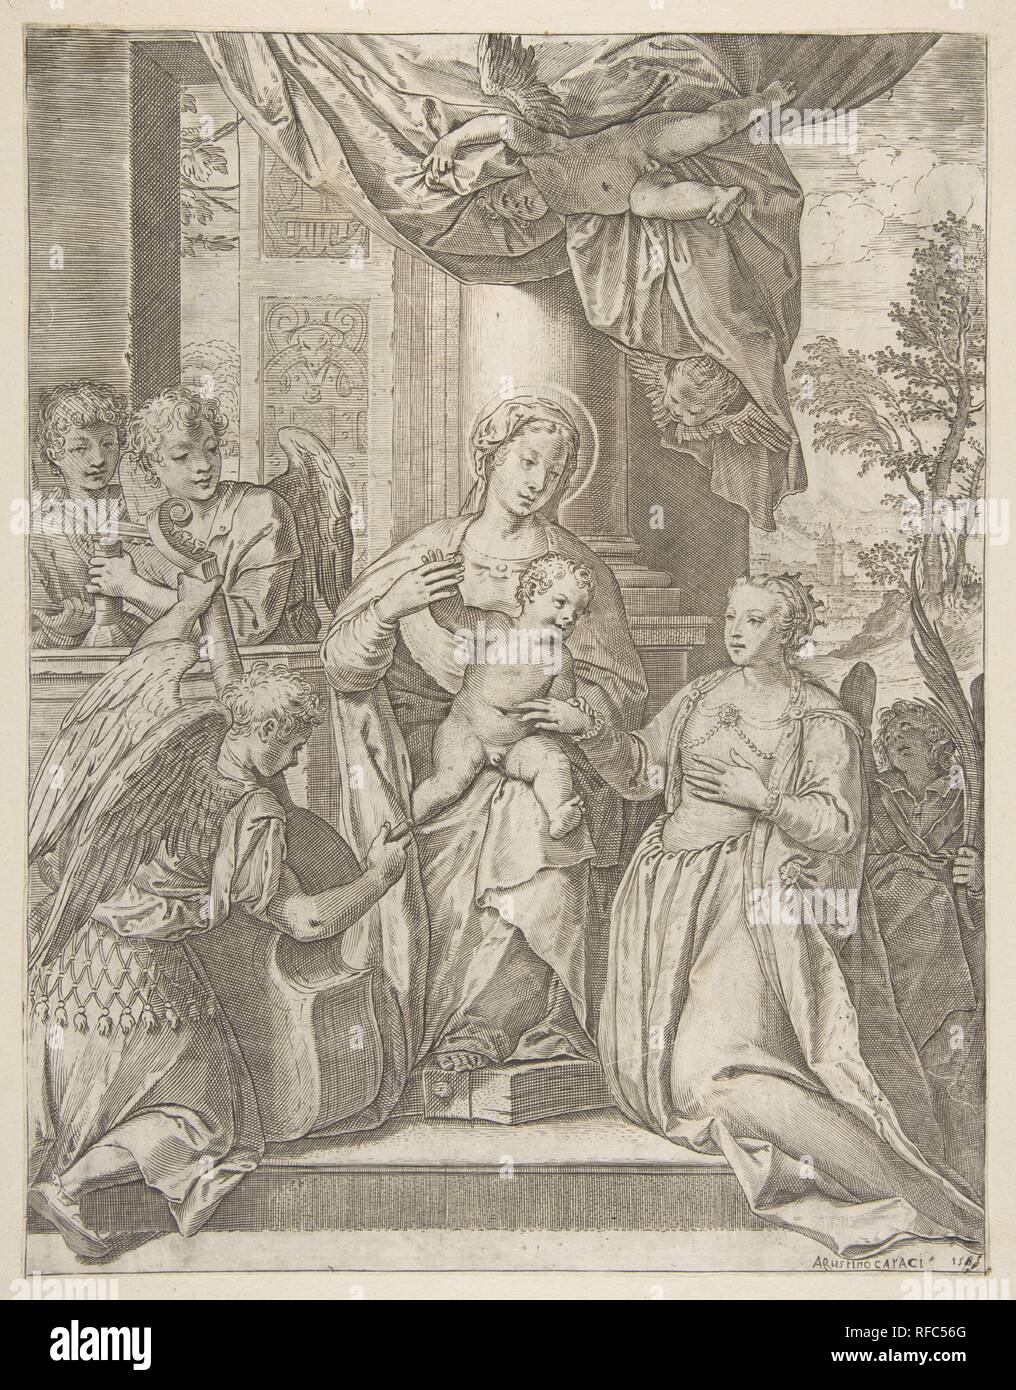 Le mariage mystique de Sainte Catherine, qui siège au centre avec l'enfant Jésus, les anges avec des instruments à la gauche. Artiste : Agostino Carracci (italien, 1557-1602) ; Bologne Parme Après Paolo Veronese (Paolo Caliari) italien (1528-1588) Venise, Vérone. Fiche Technique Dimensions : (découpés) : 11 × 9/16 8 7/8 in. (29,3 × 22,6 cm). Date : 1585. Fiche n'a été taillé à l'image. D'après le catalogue raisonné (DeGrazia Bohlin, 1979) il y a eu une inscription dans la marge que de lire "Pauli Calliari. inven' et 'Antonius Carensanus. fo'. Musée : Metropolitan Museum of Art, New York, USA. Banque D'Images